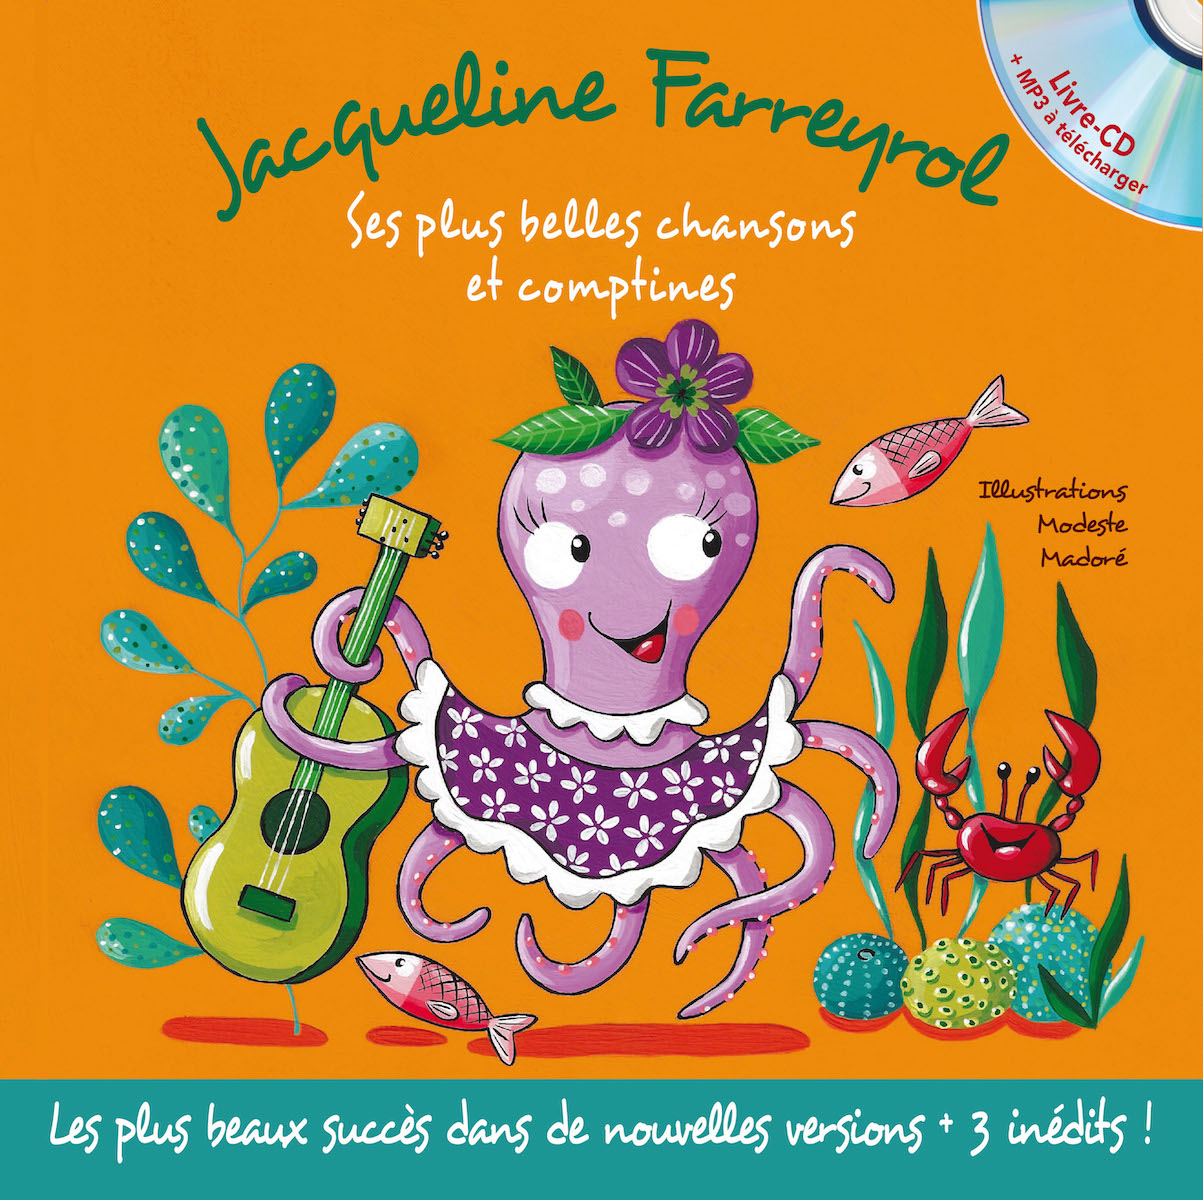 Jacqueline Farreyrol – Ses plus belles chansons et comptines